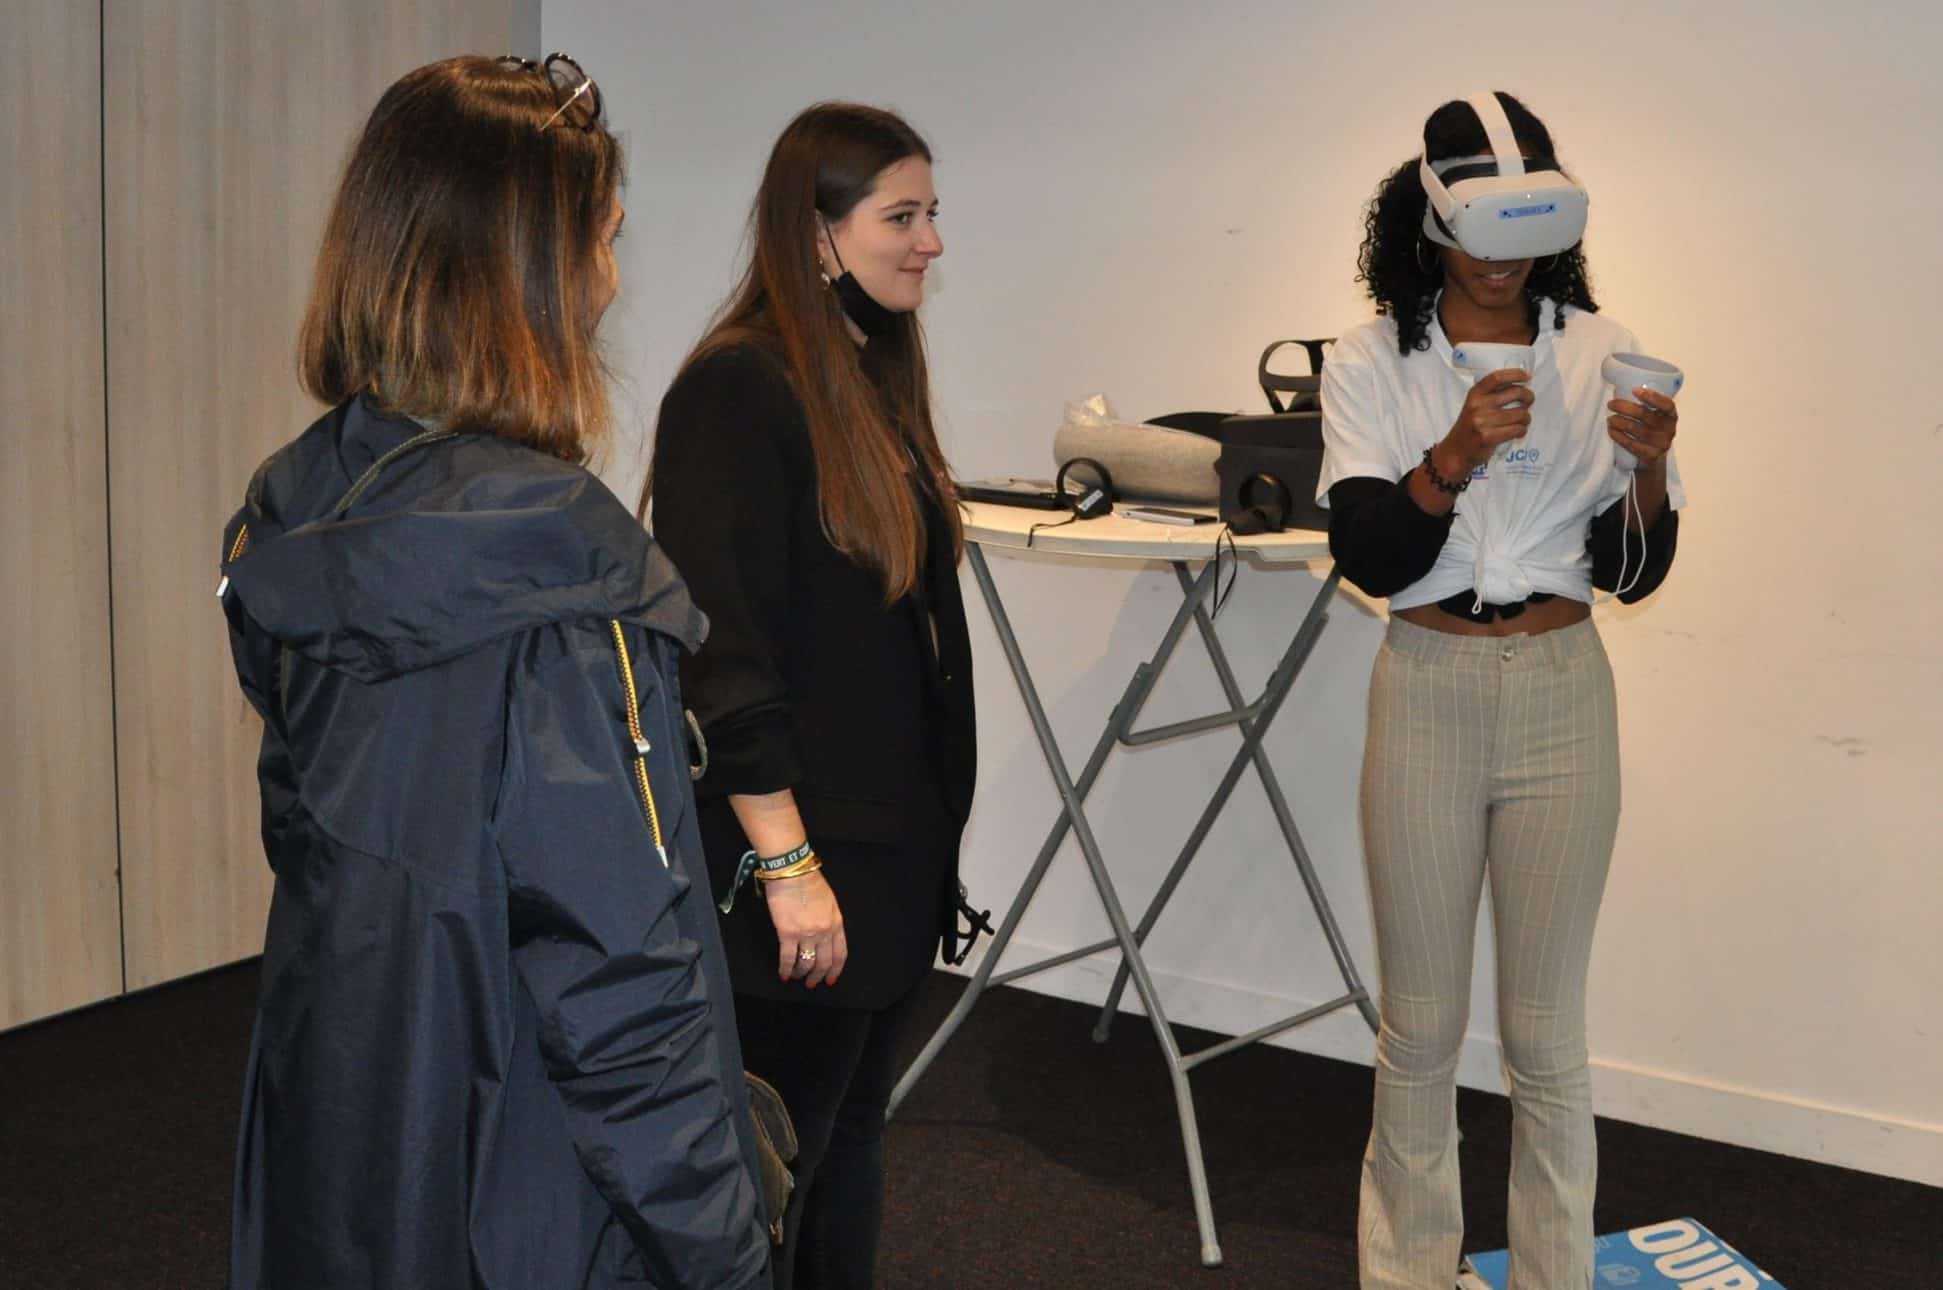 Les étudiants essaient les casques de réalité virtuelle. Cheer Hope, le 7 octobre 2021.